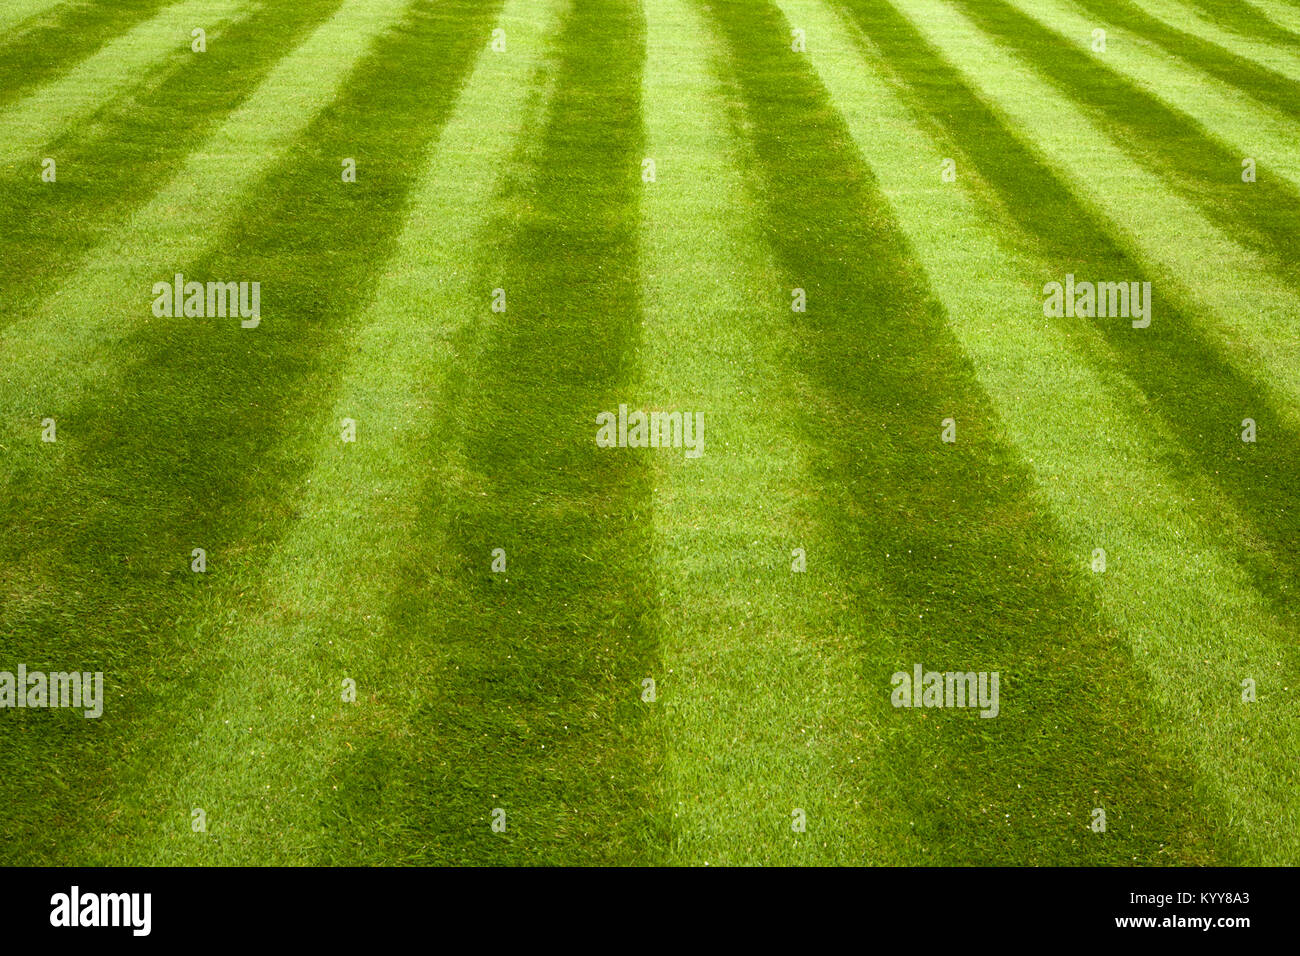 Jardin pelouse avec faucheuse stripes Banque D'Images